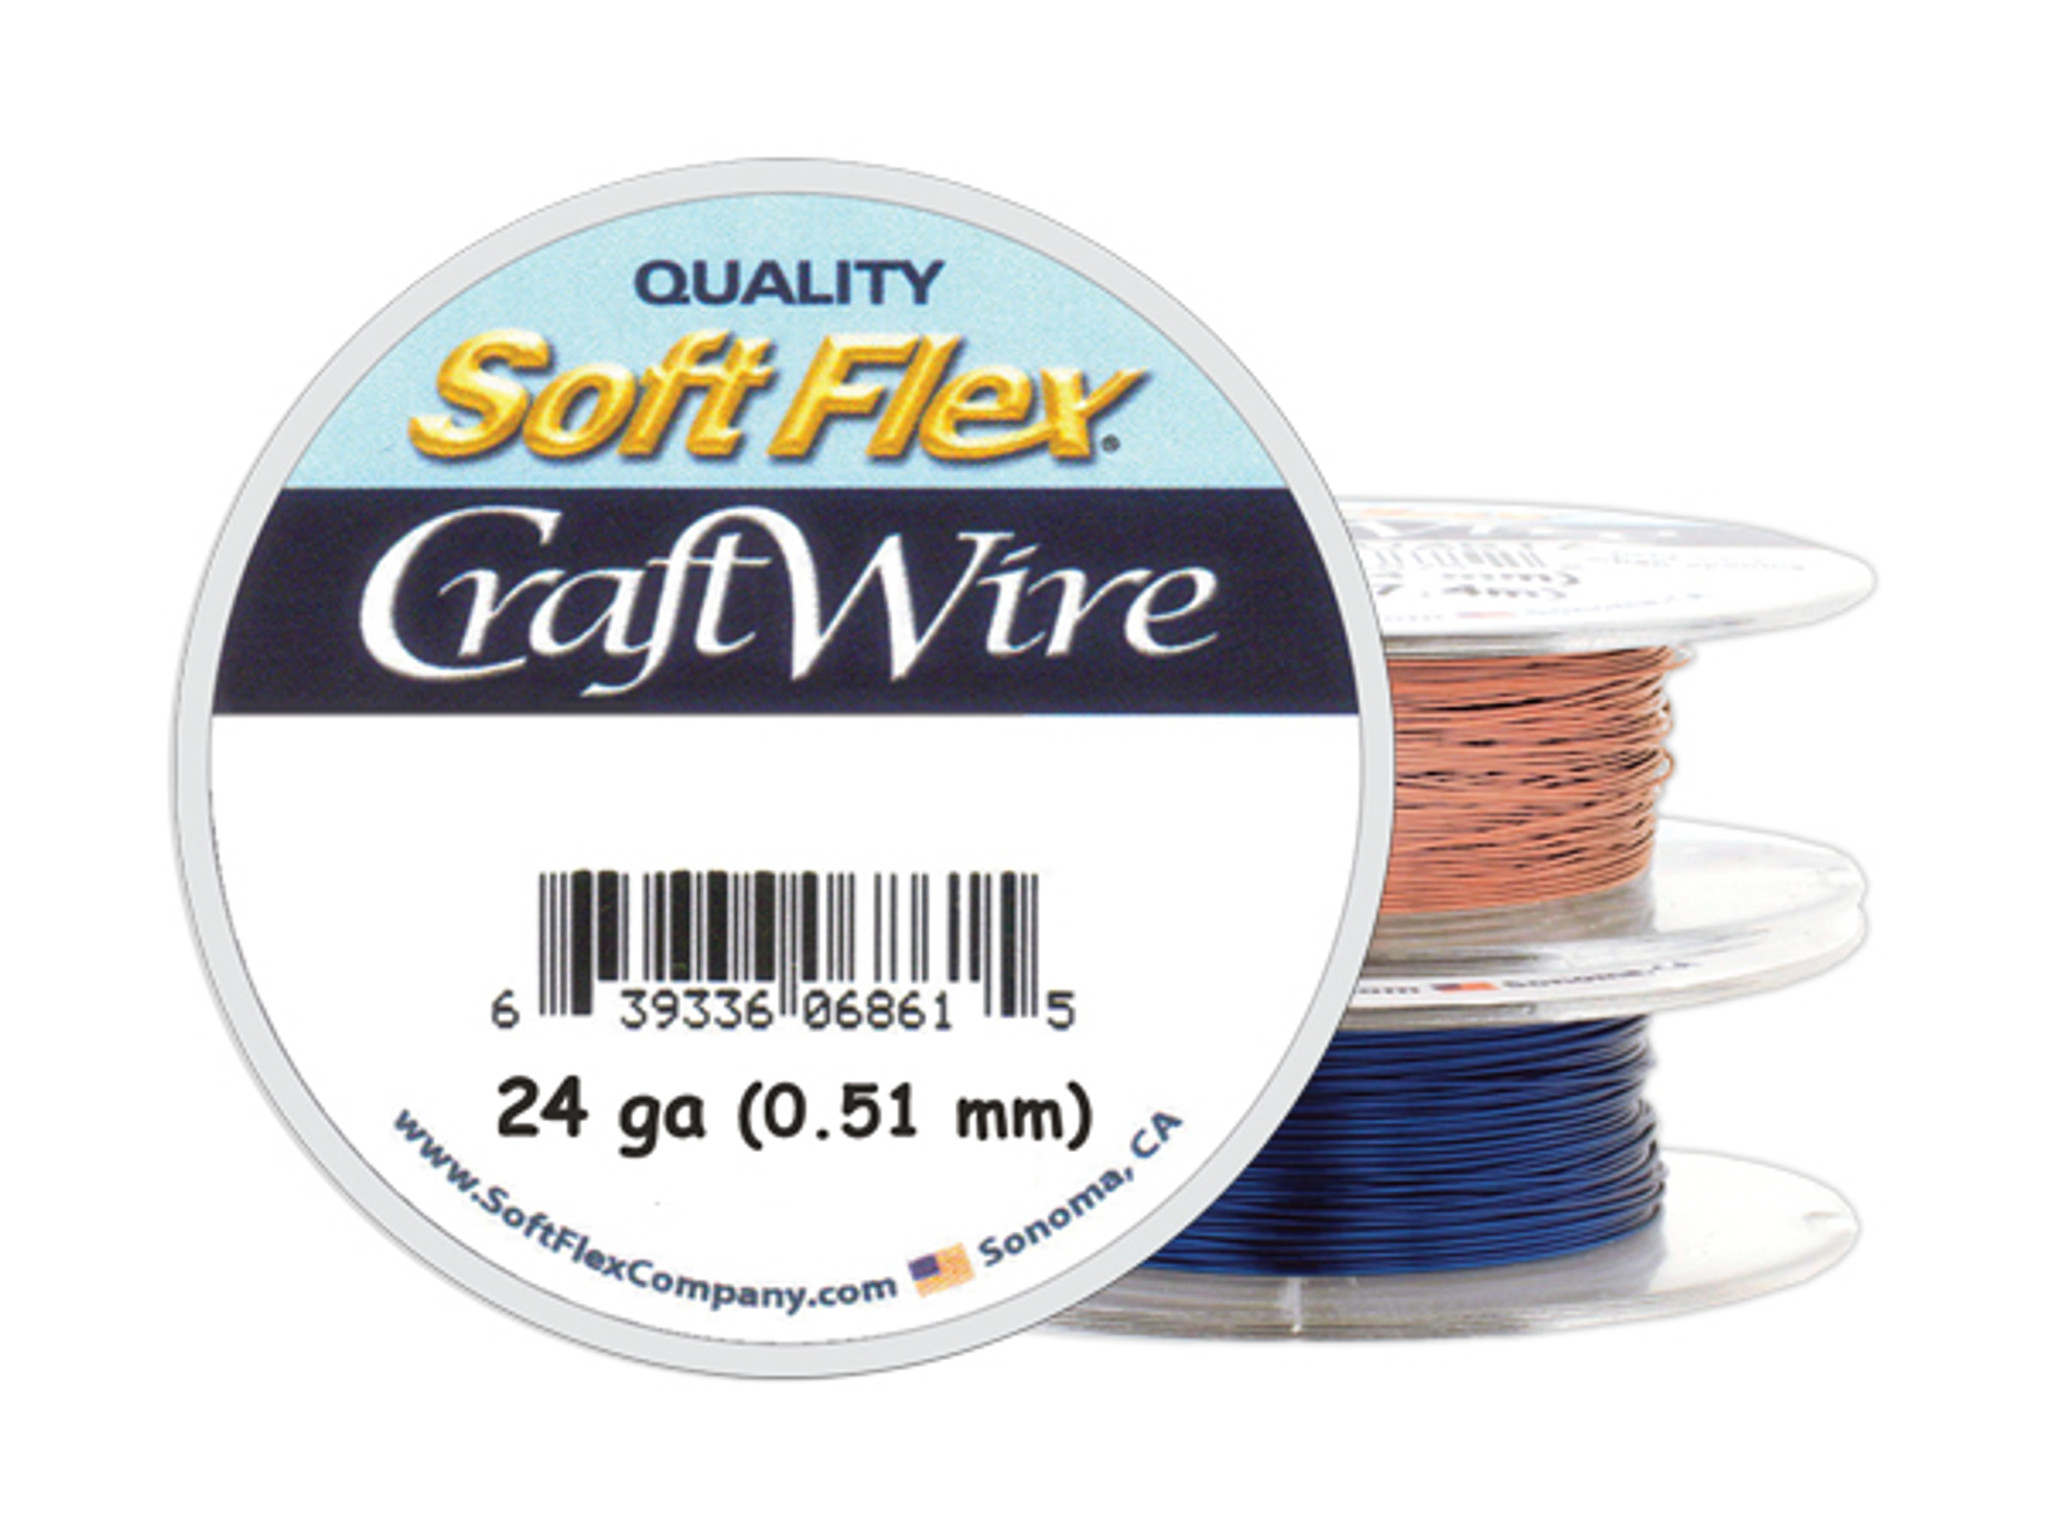 Soft Flex Craft Wire - 24ga/.511mm - 60 ft/20 yd/18 m